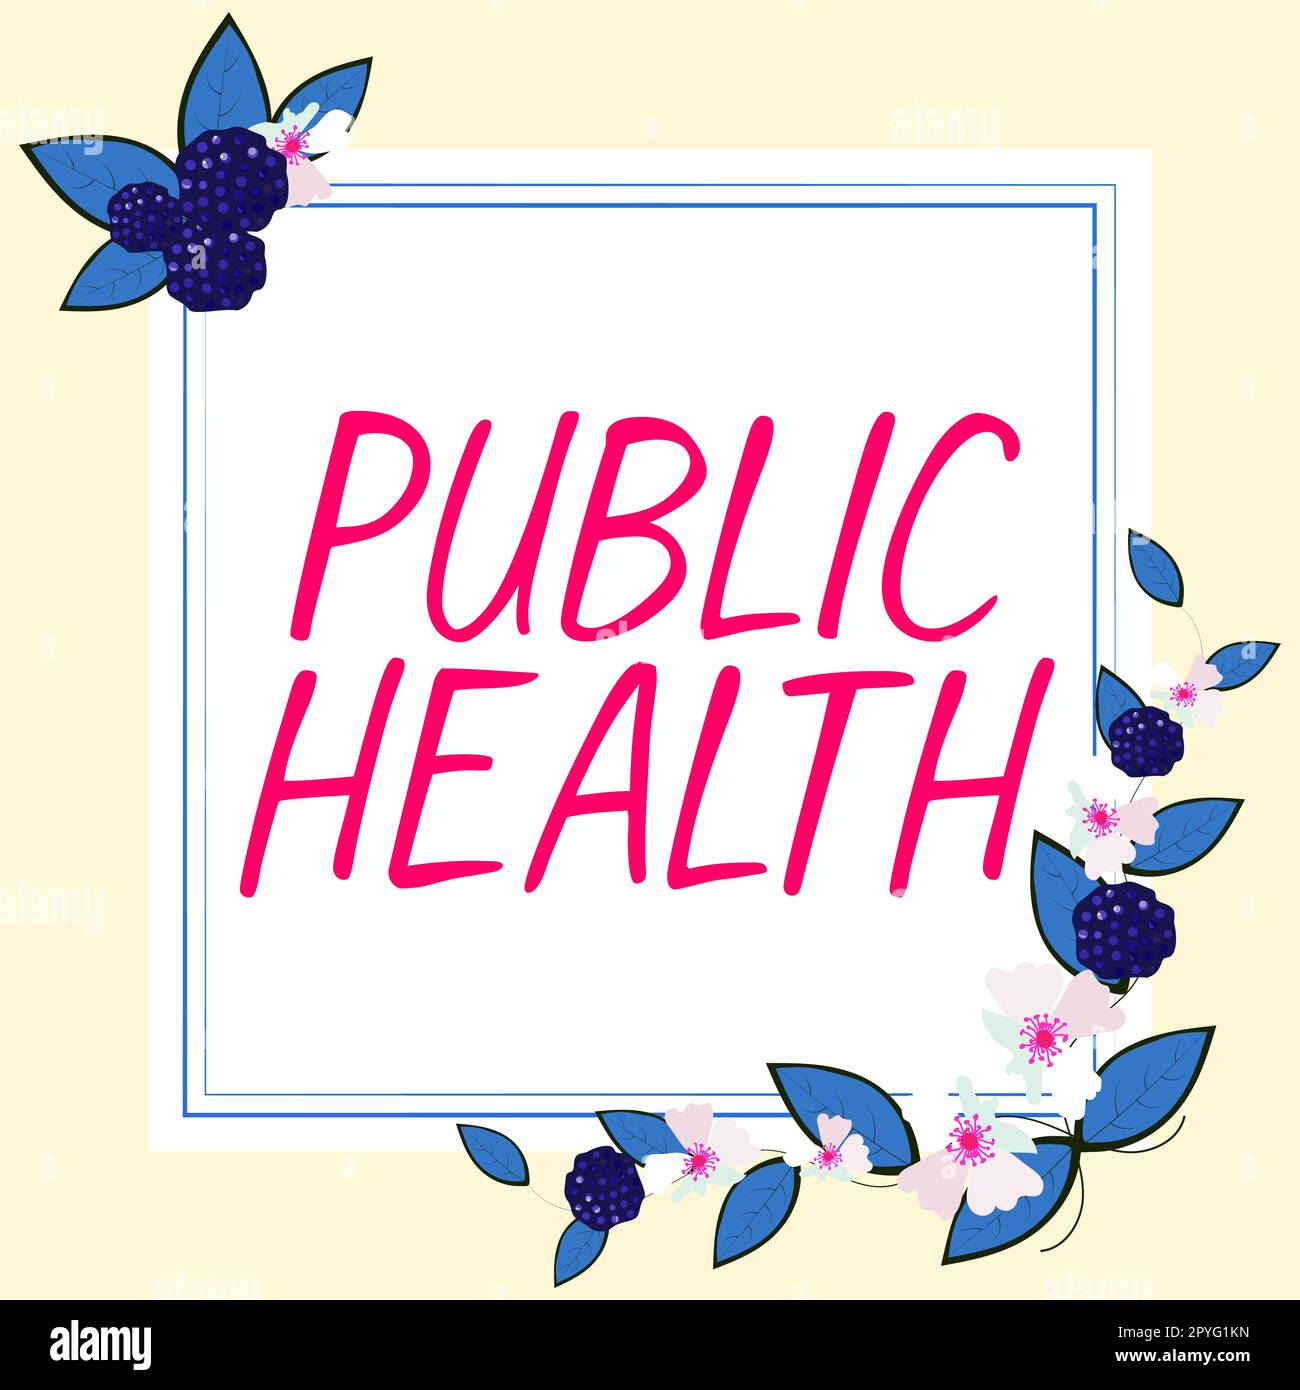 Inspiration zeigt Zeichen Public Health. Geschäftsidee zur Förderung eines gesunden Lebensstils für die Gemeinschaft und ihre Menschen Stockfoto